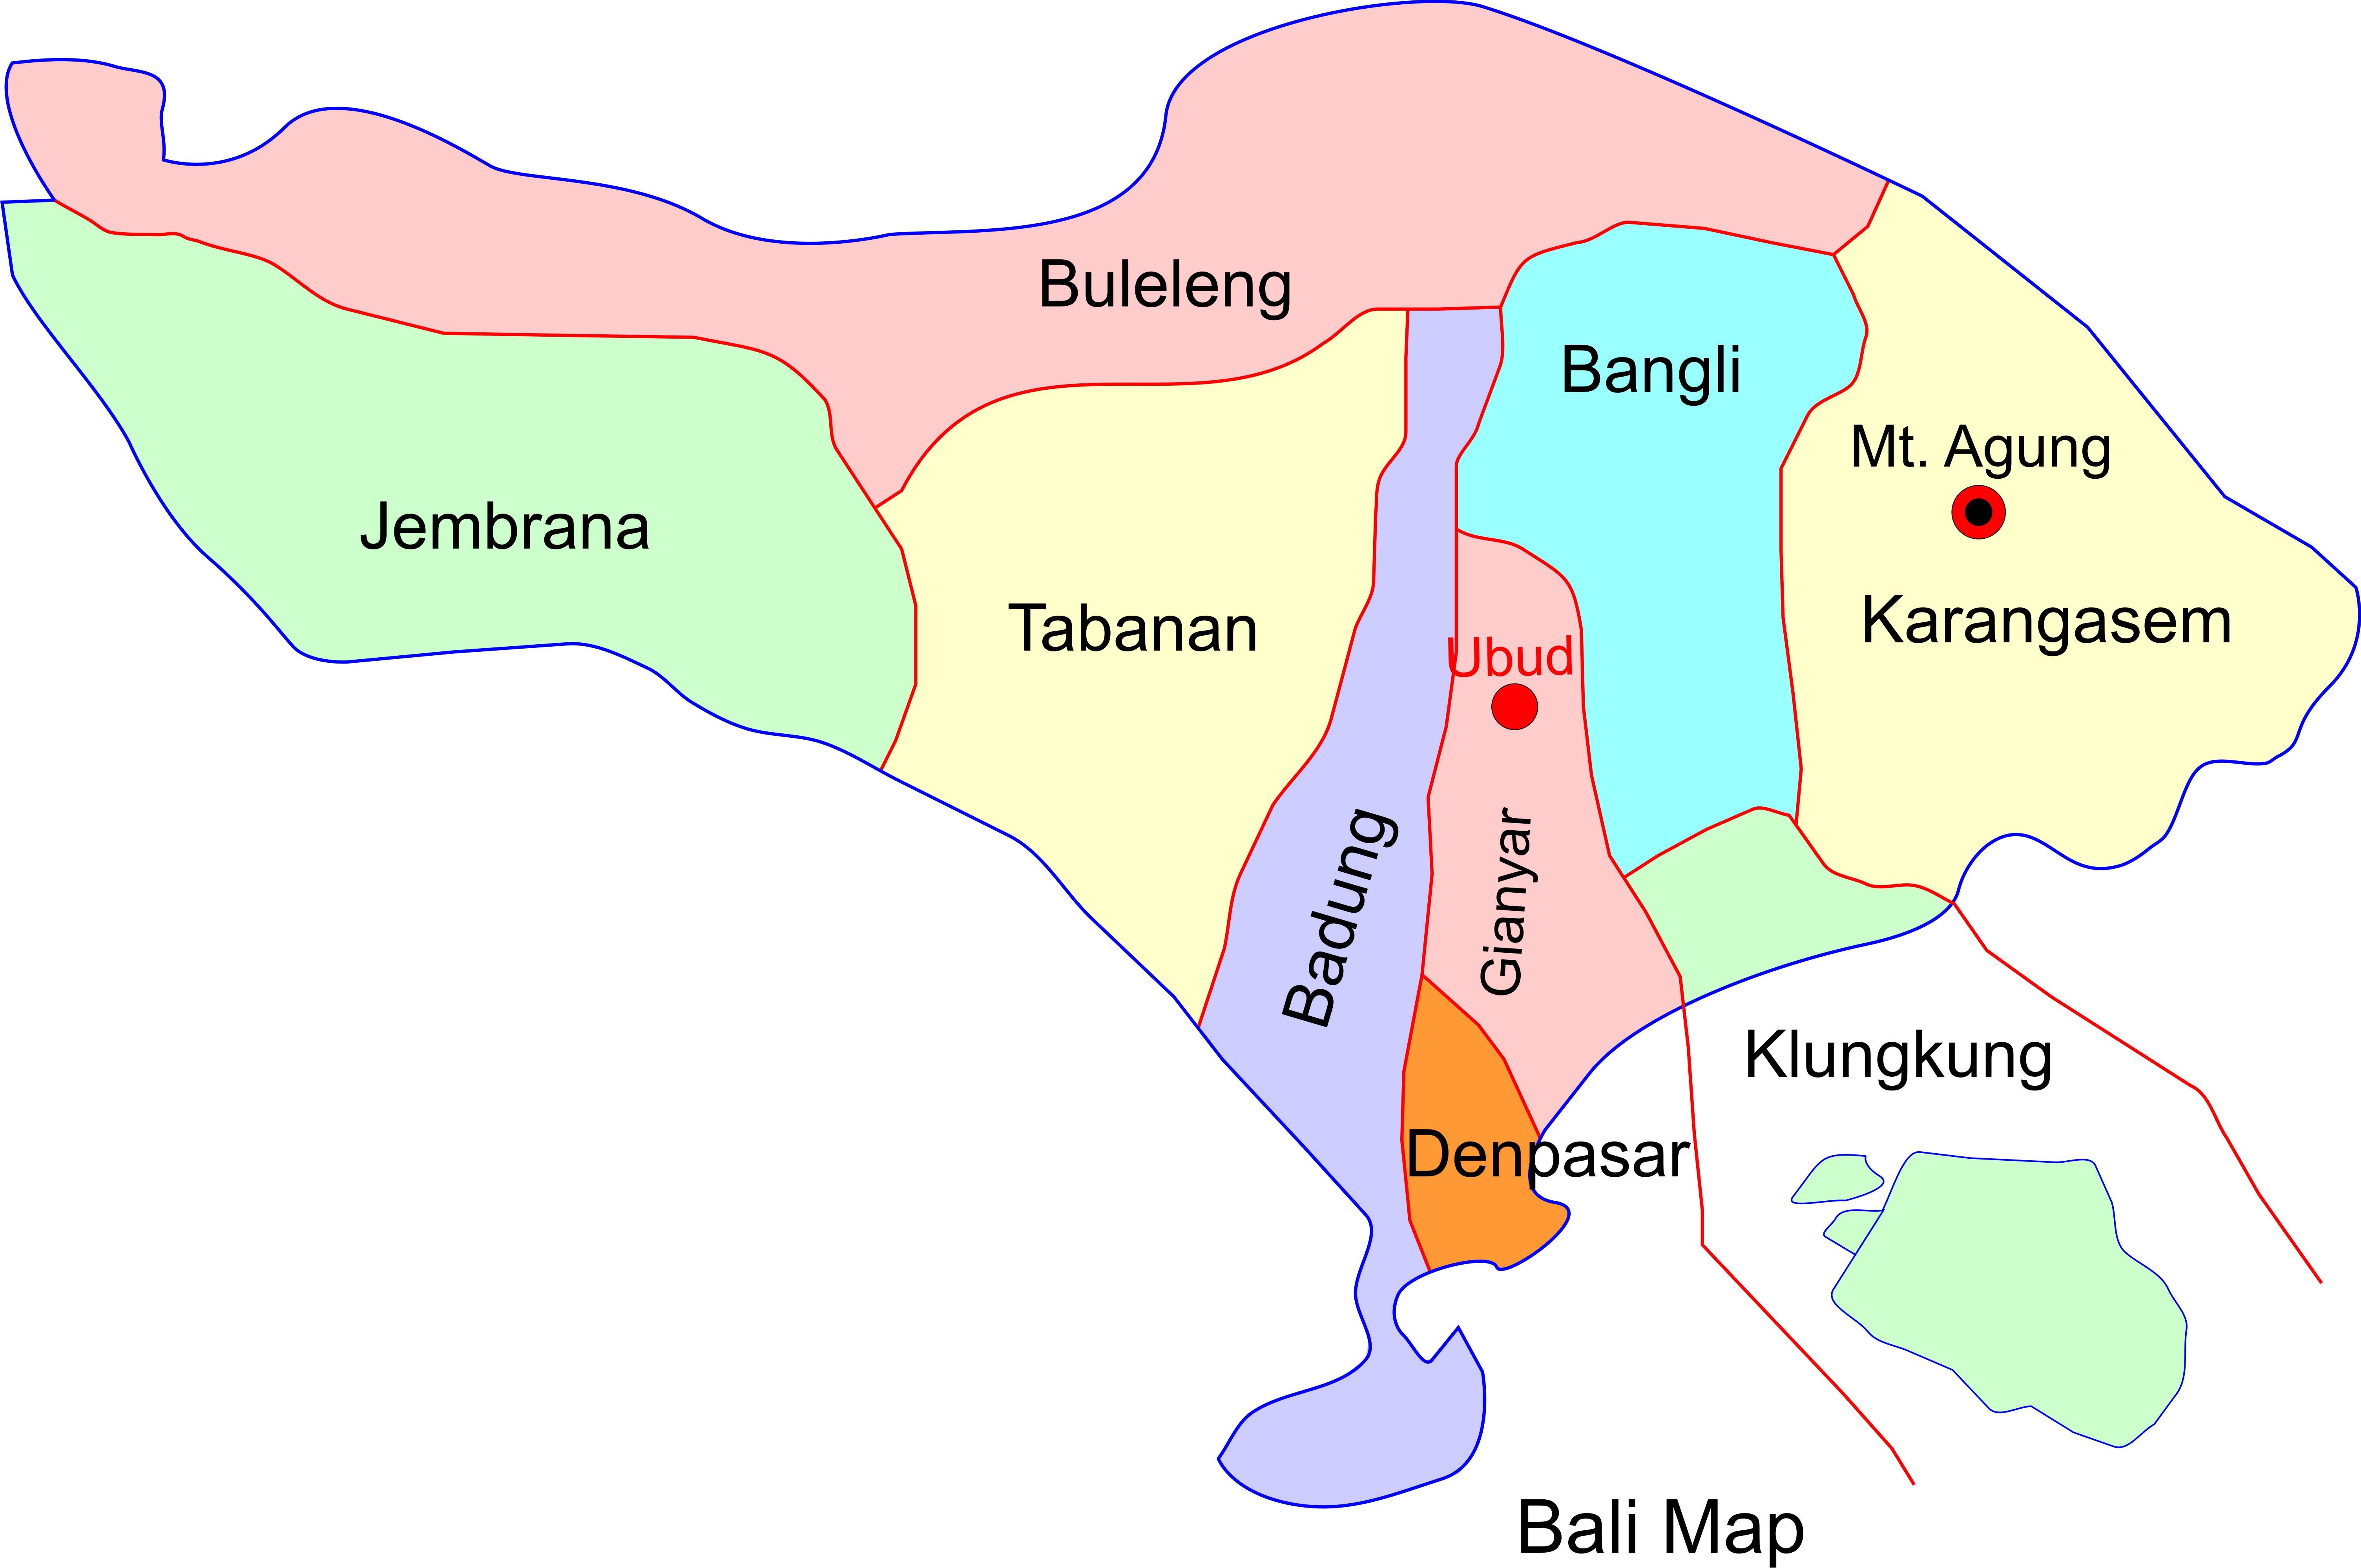 Остров бали: где находится и достопримечательности. пляжи, отели и отдых на острове бали